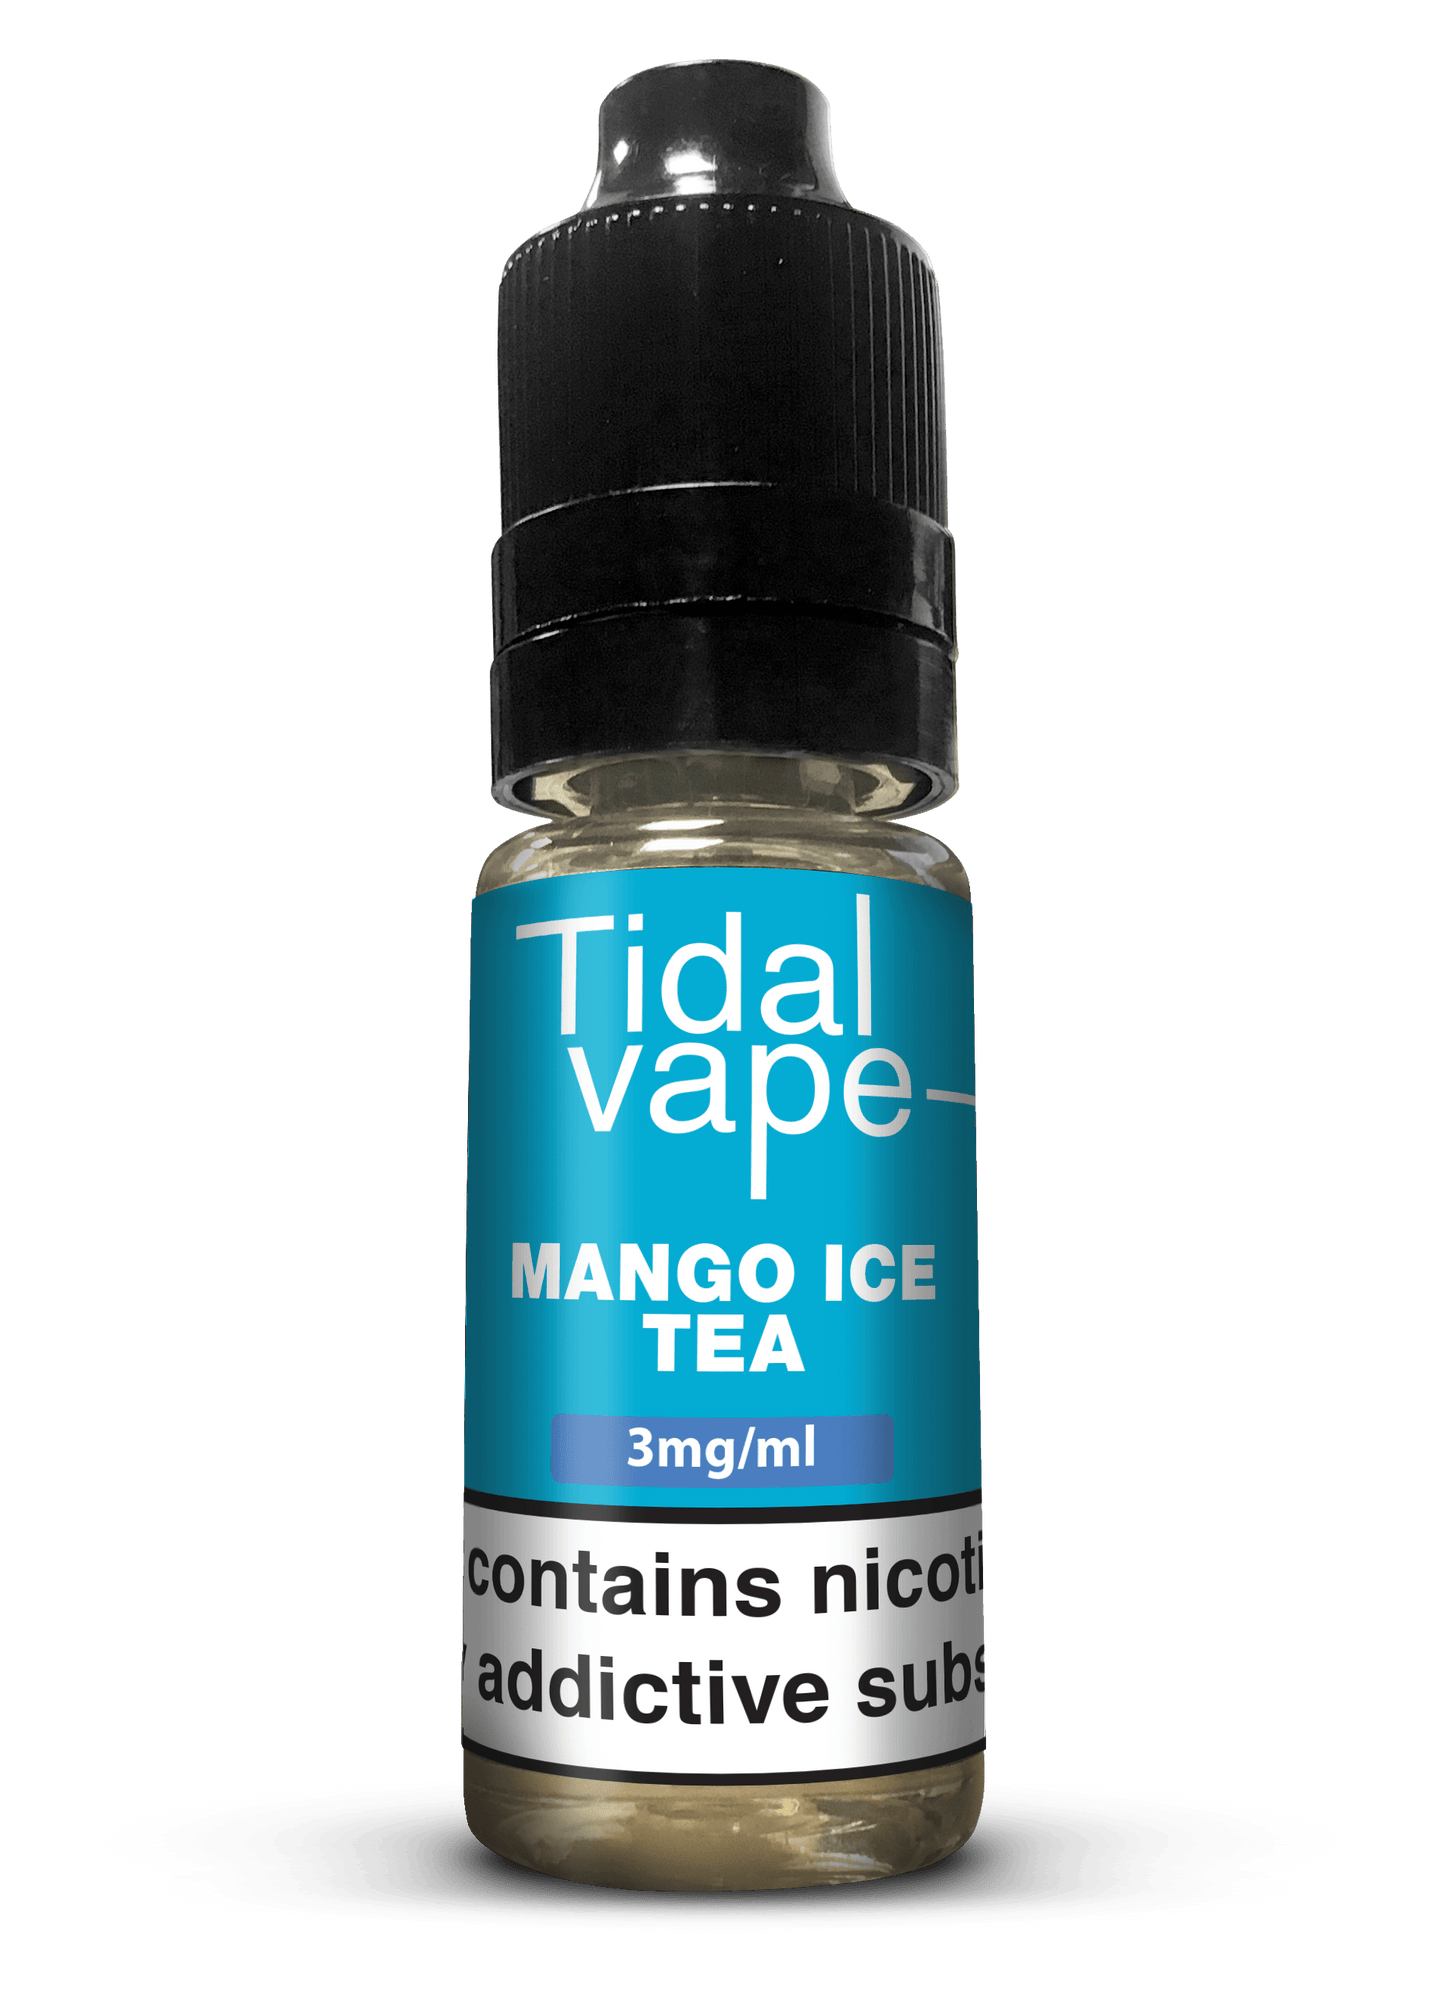 Mango Ice Tea E-Liquid by Tidal Vape